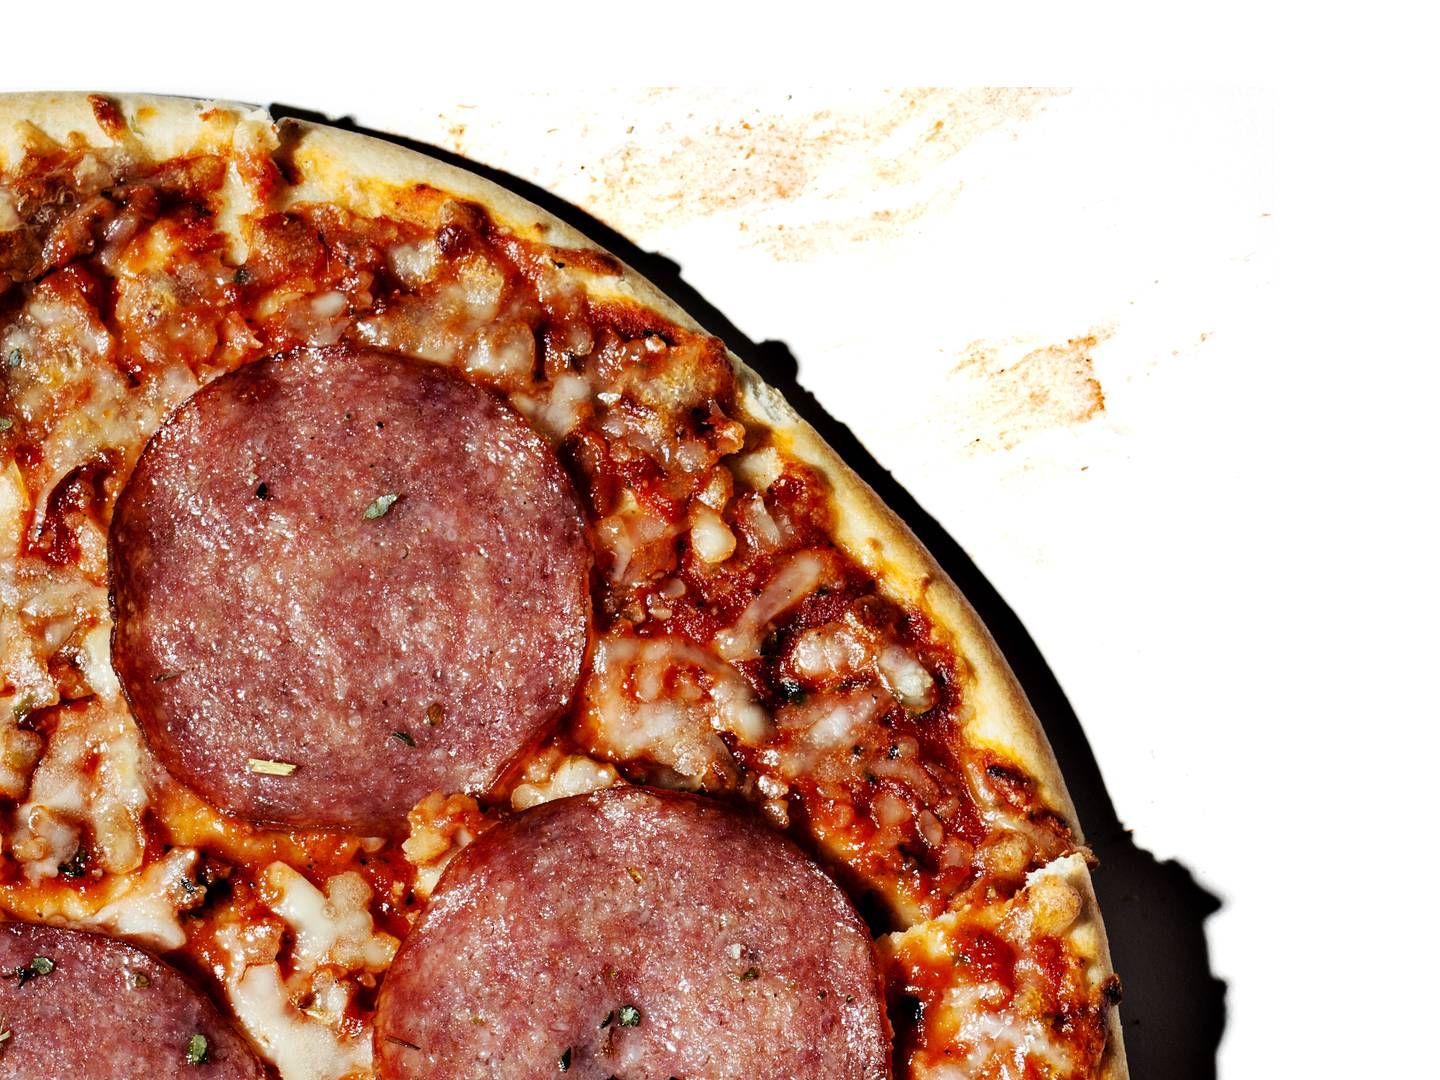 Frysepizza ligger på en klar førsteplads over danskernes foretrukne færdigretter, viser analyse fra Coop. | Foto: Rune Pedersen